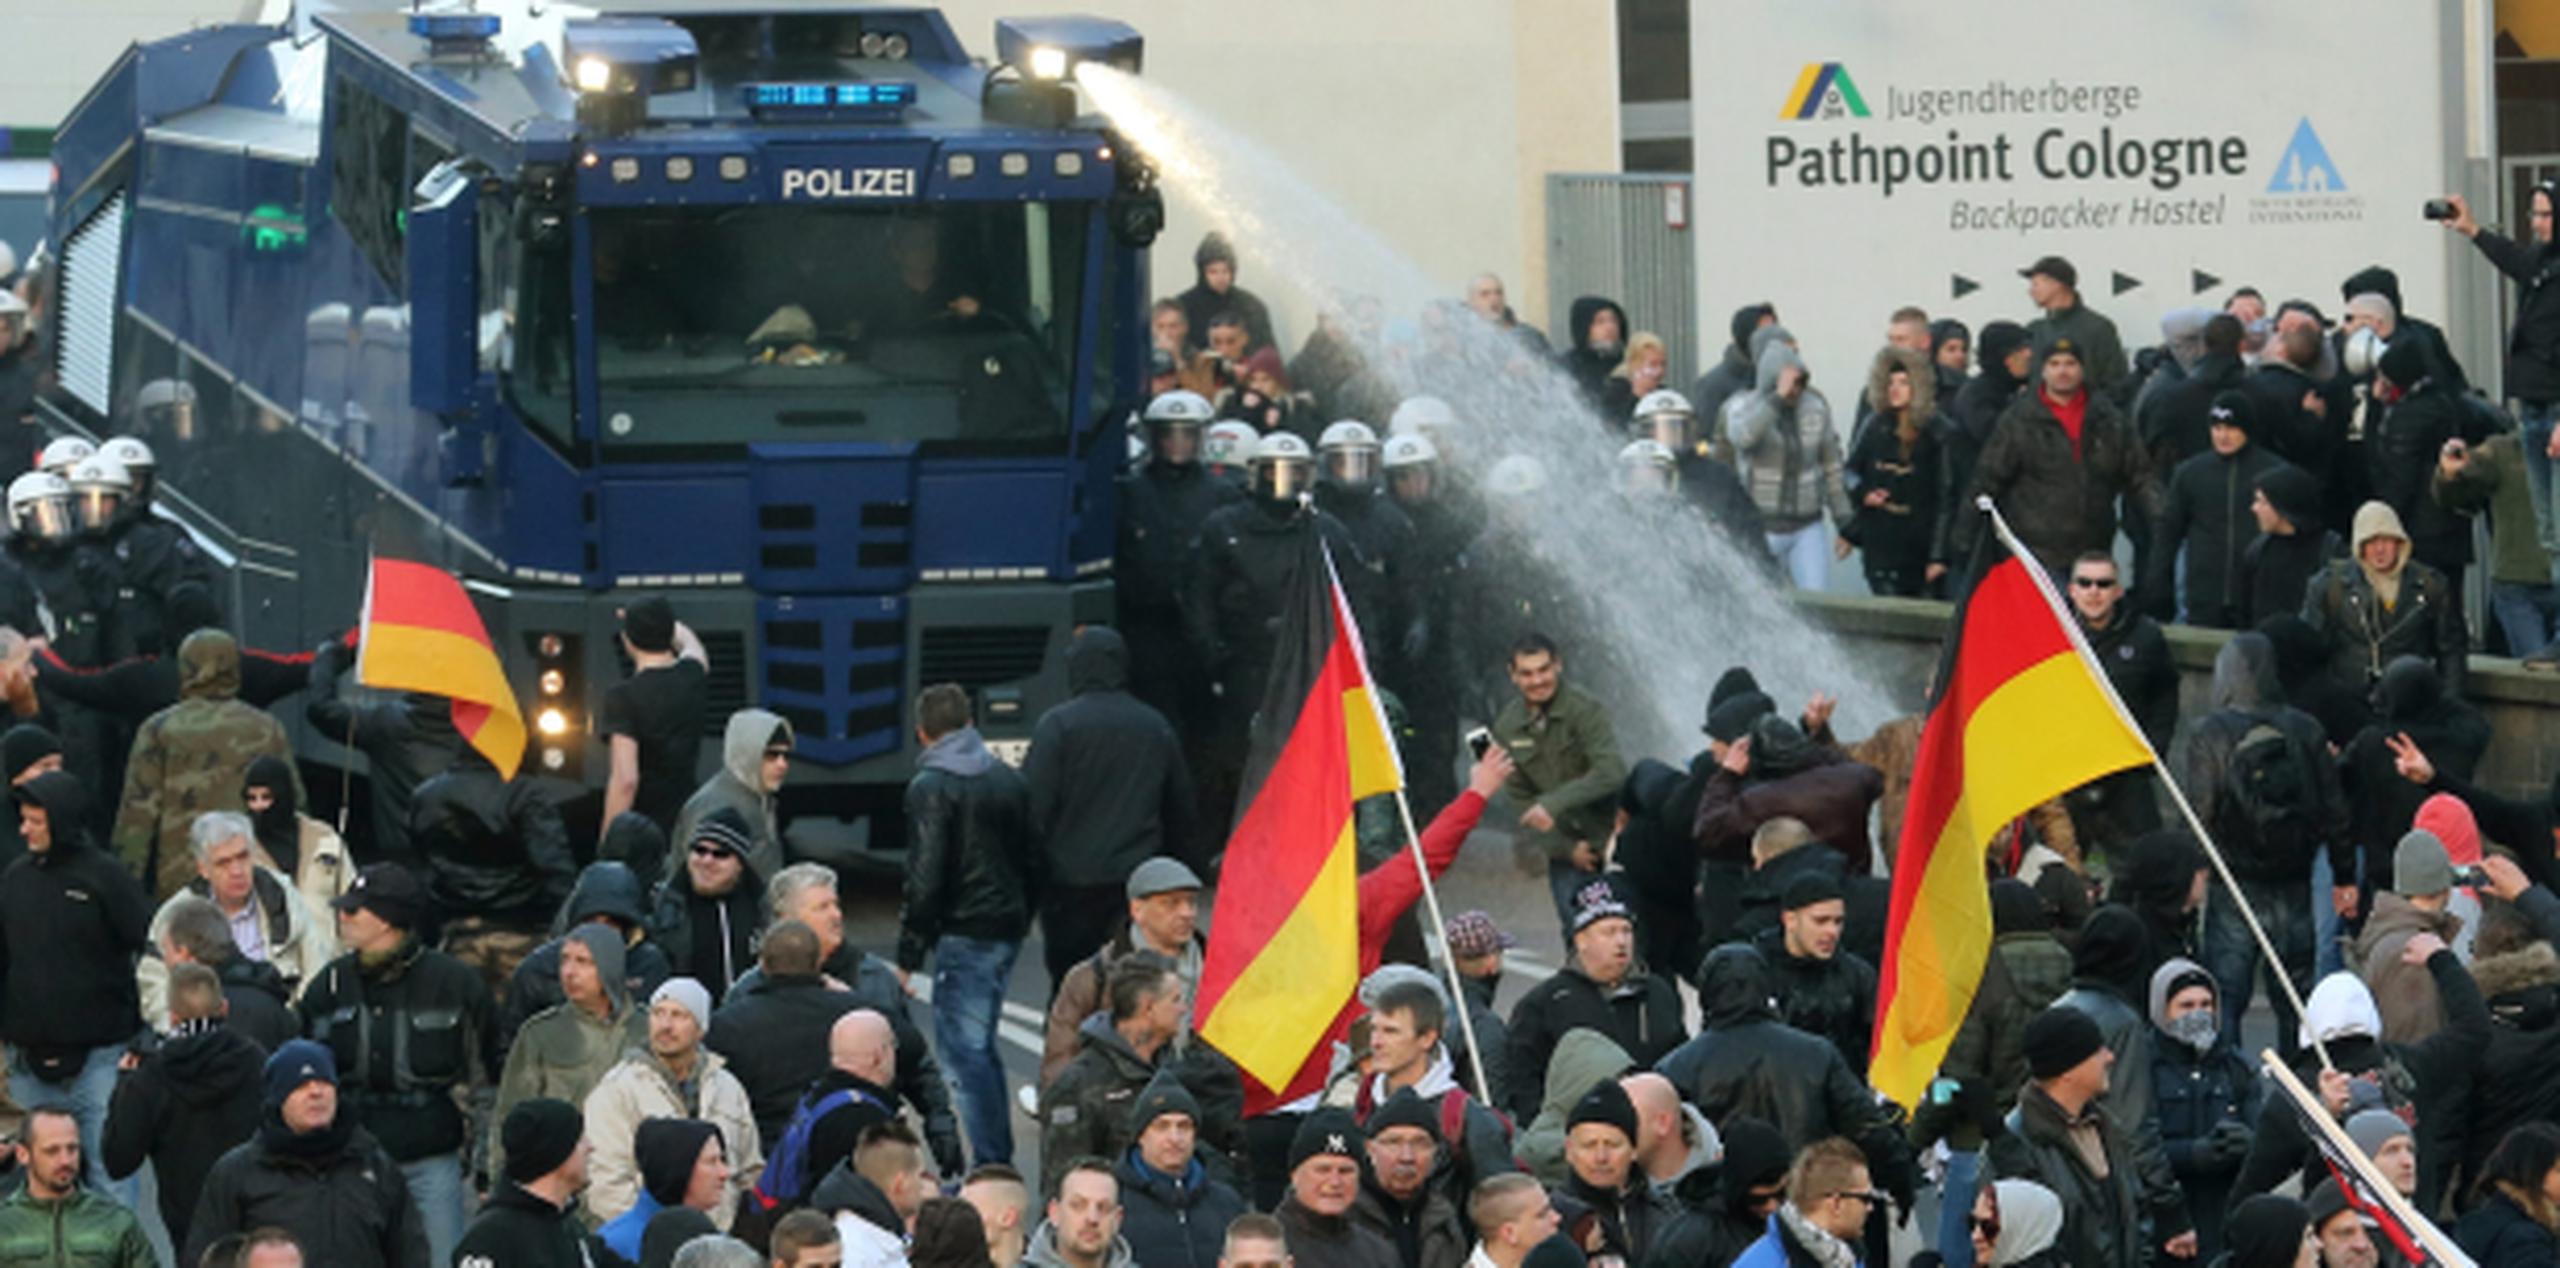 En medio de la tensión creada por los sucesos de Colonia, un grupo xenófobo convocó a una manifestación que fue disuelta por los agentes antidisturbios con cañones de agua. (AP)